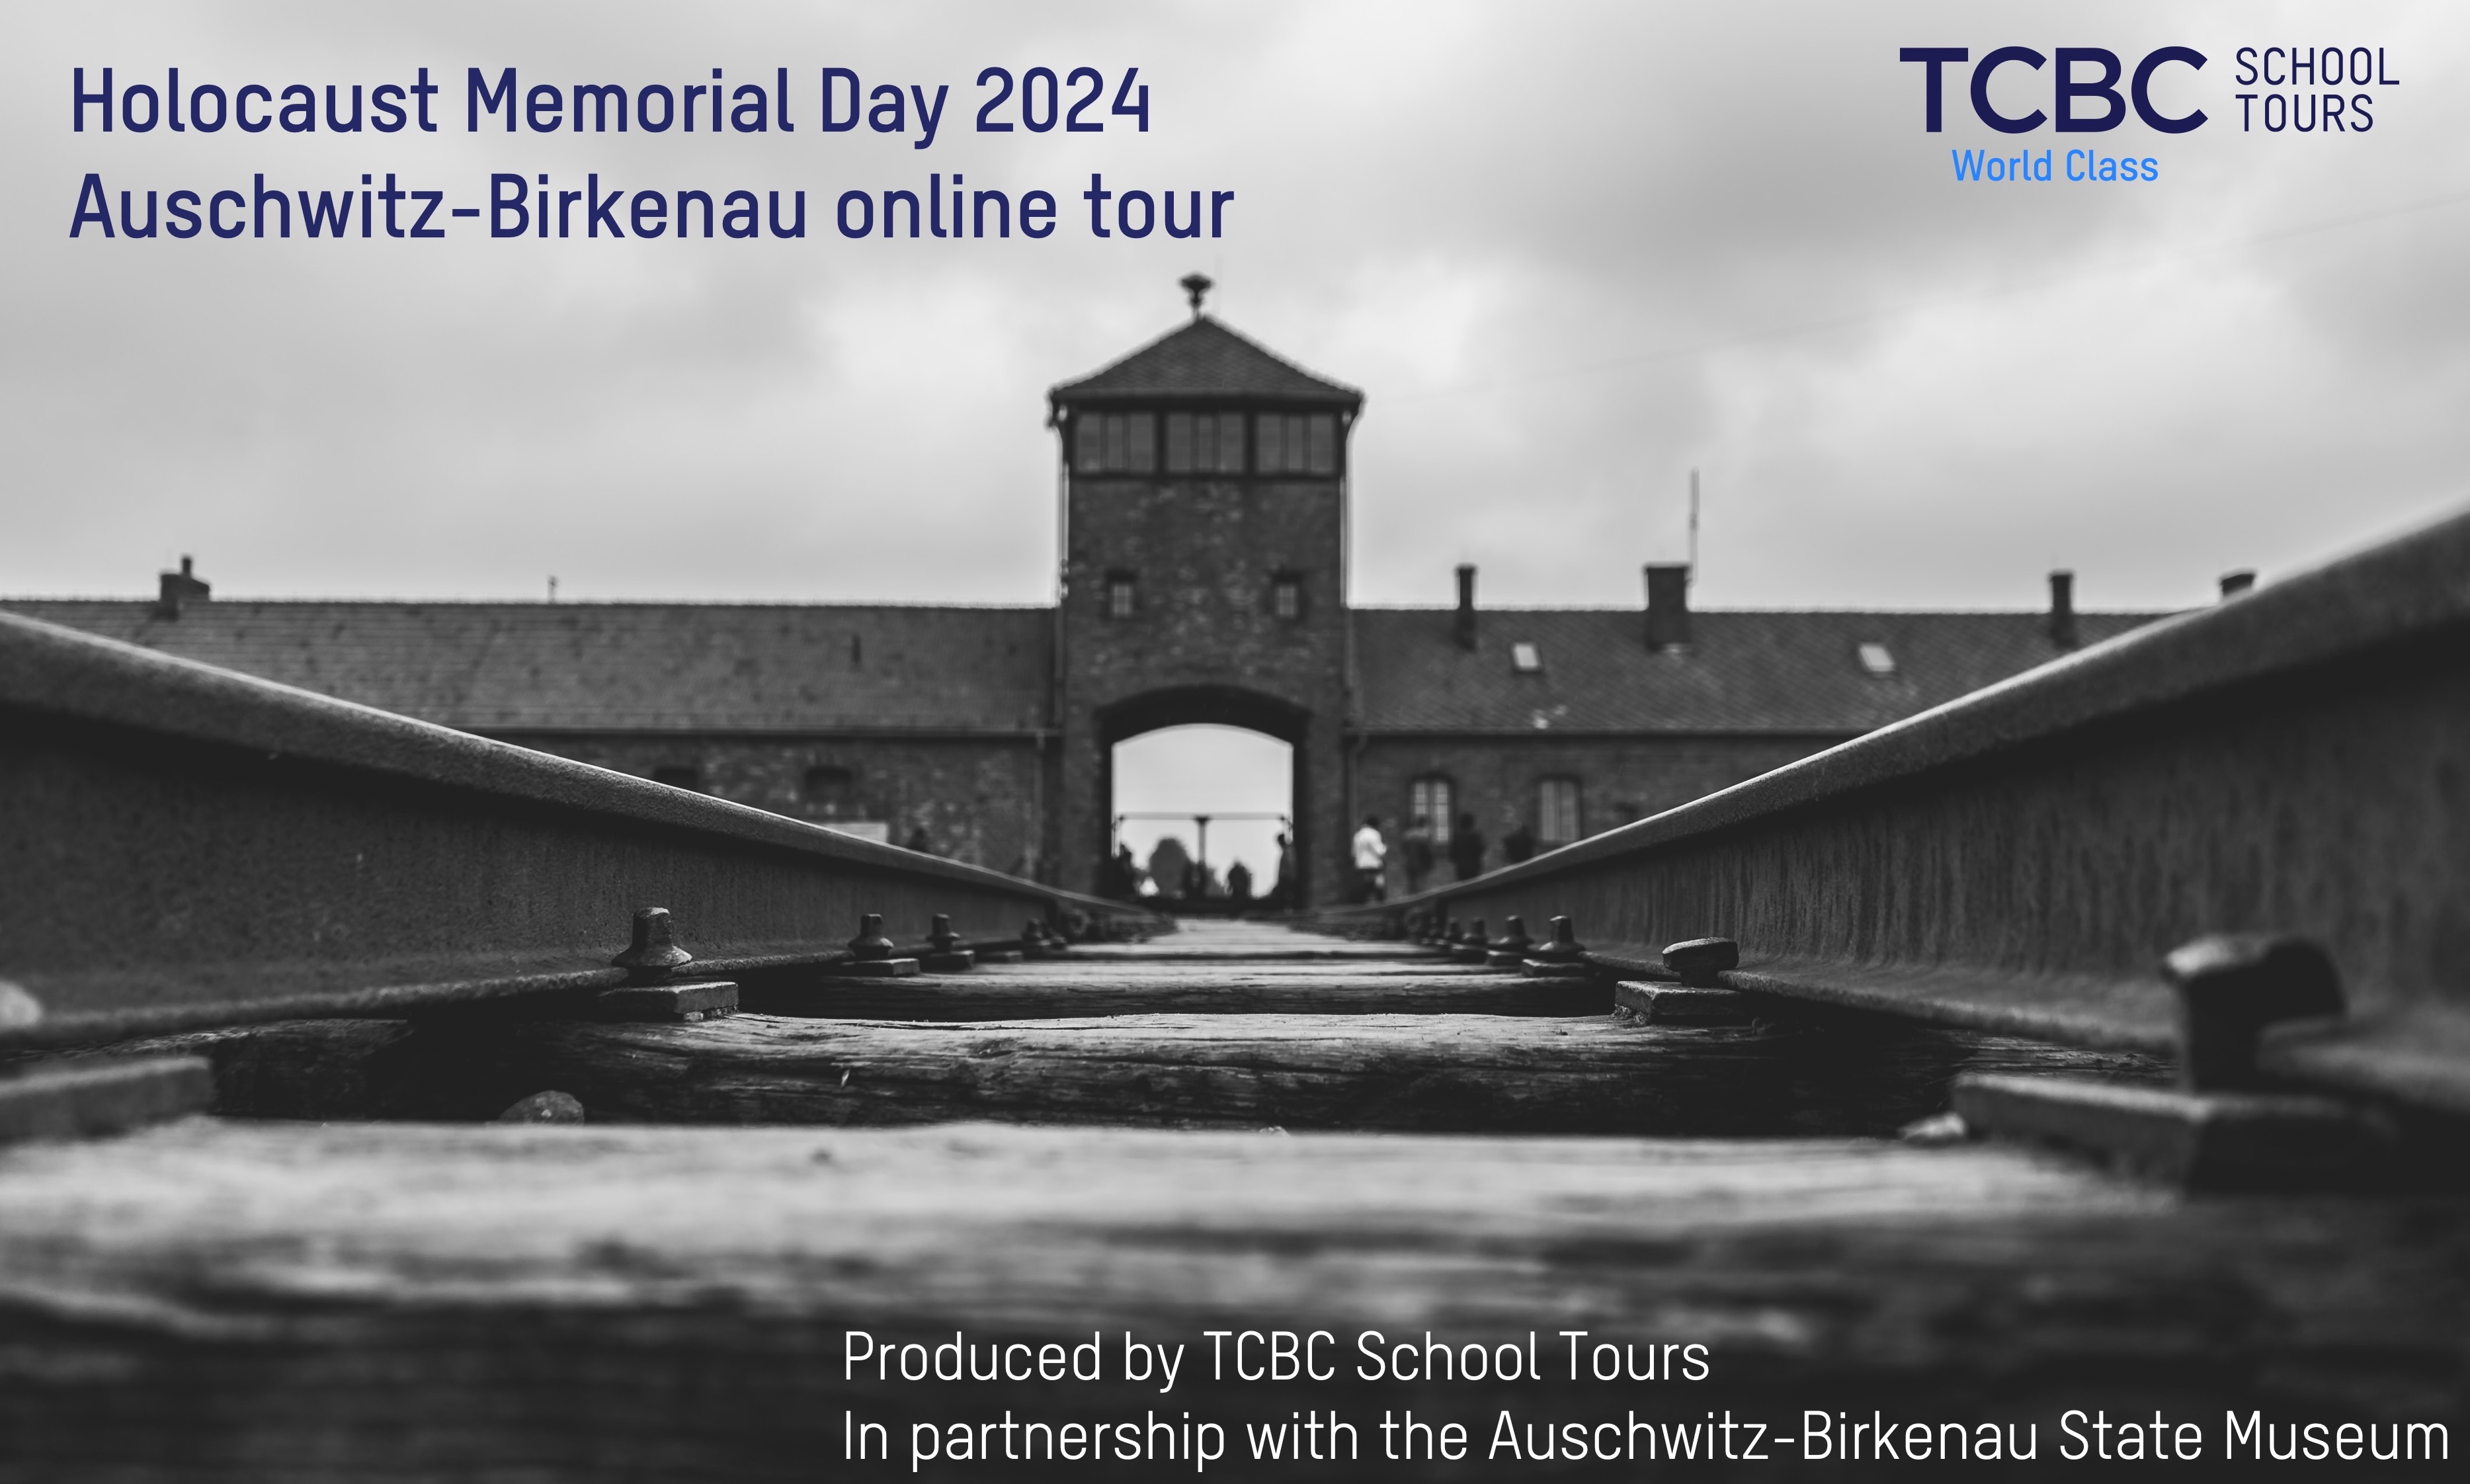 TCBC School Tours - Auschwitz-Birkenau State Museum Online Tour - HMD 2024